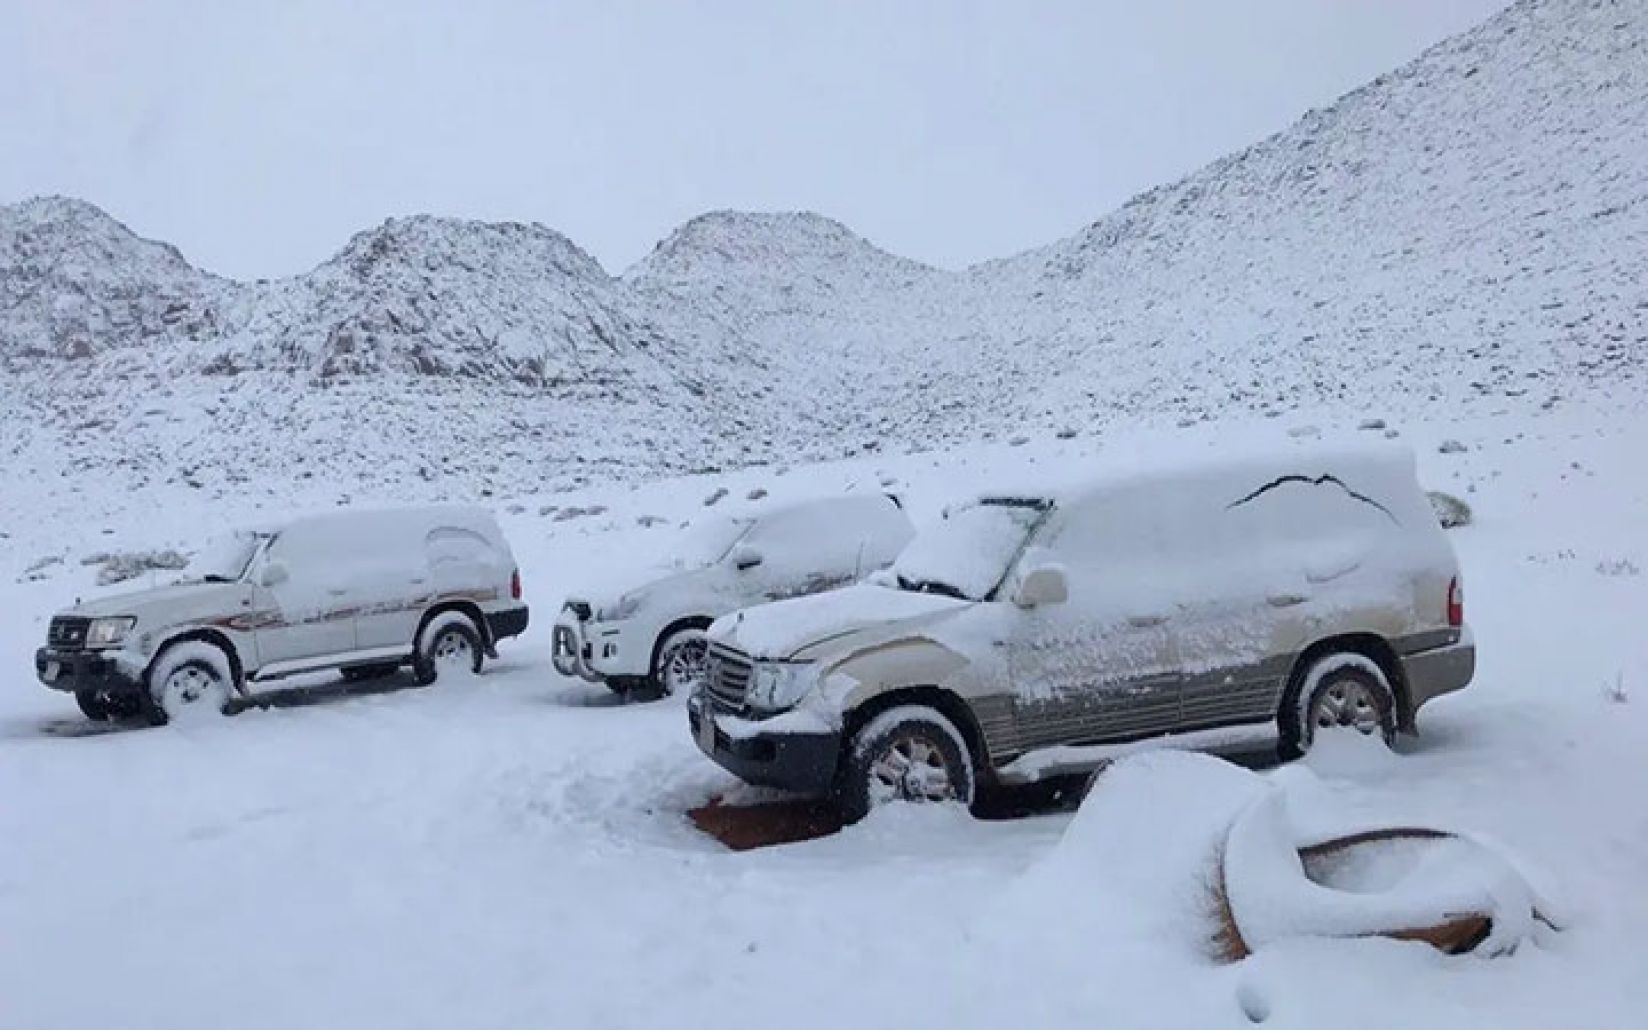 غطت الثلوج جبل اللوز في منطقة تبوك السعودية، بالصور